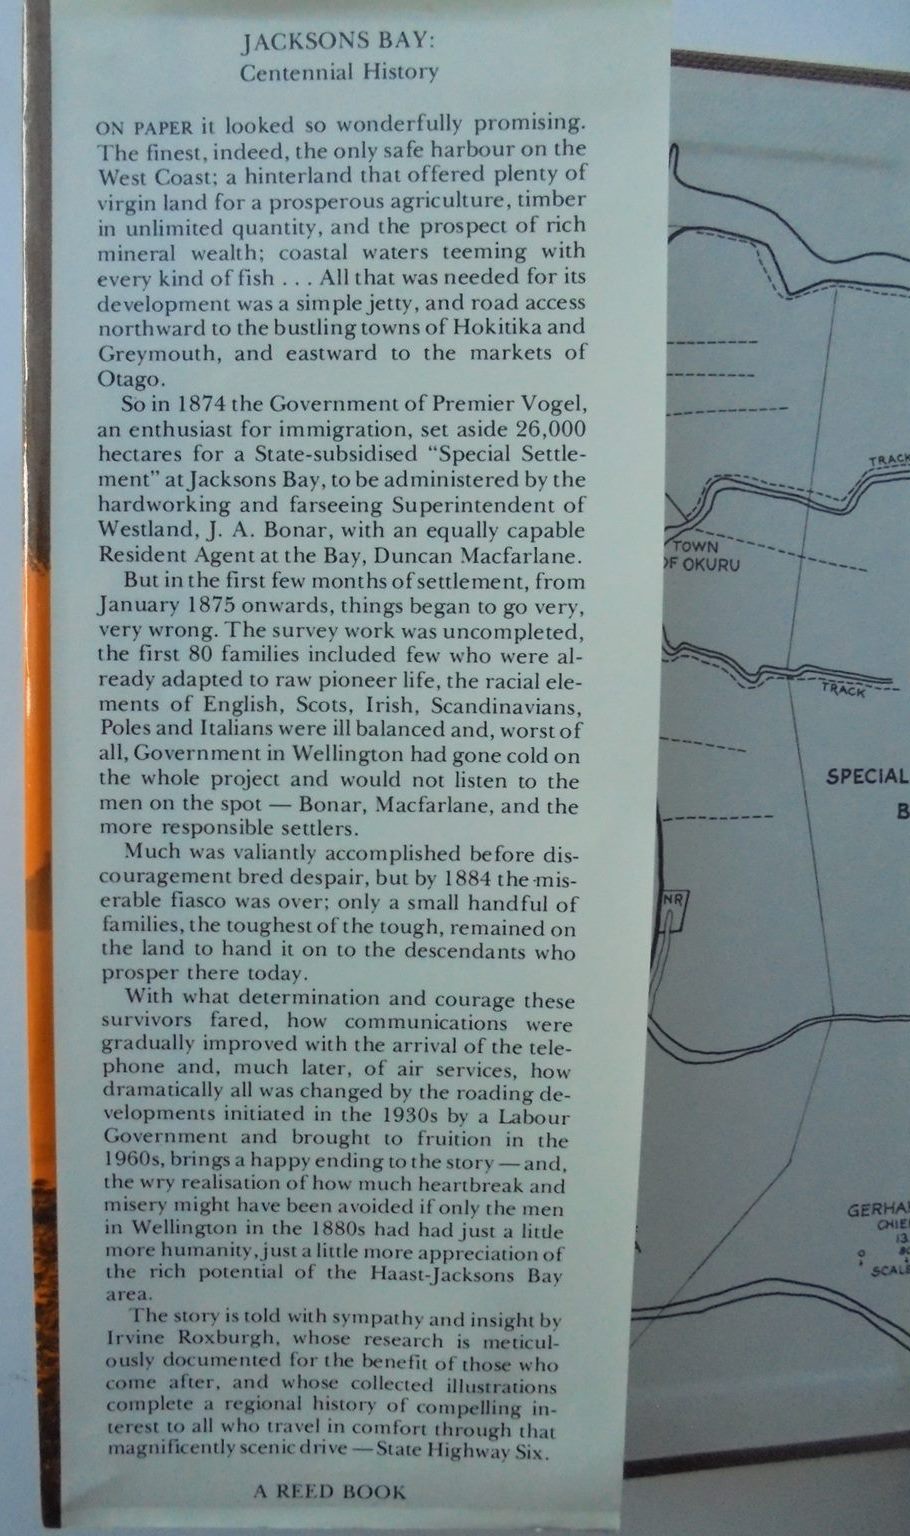 Jackson's Bay A Centennial History by Irvine Roxburgh.